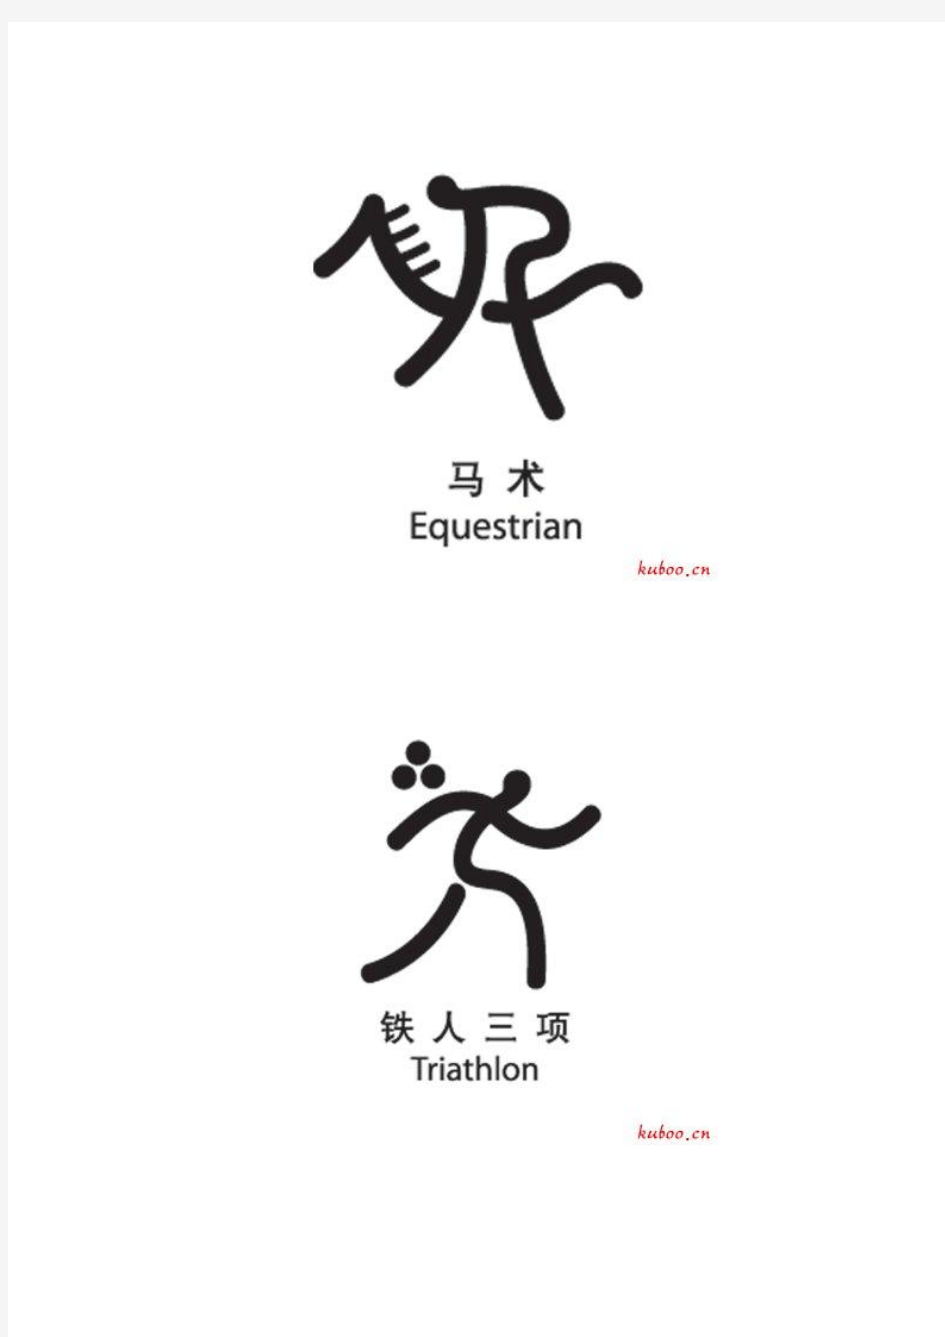 2008年北京奥运会各参赛项目标志集